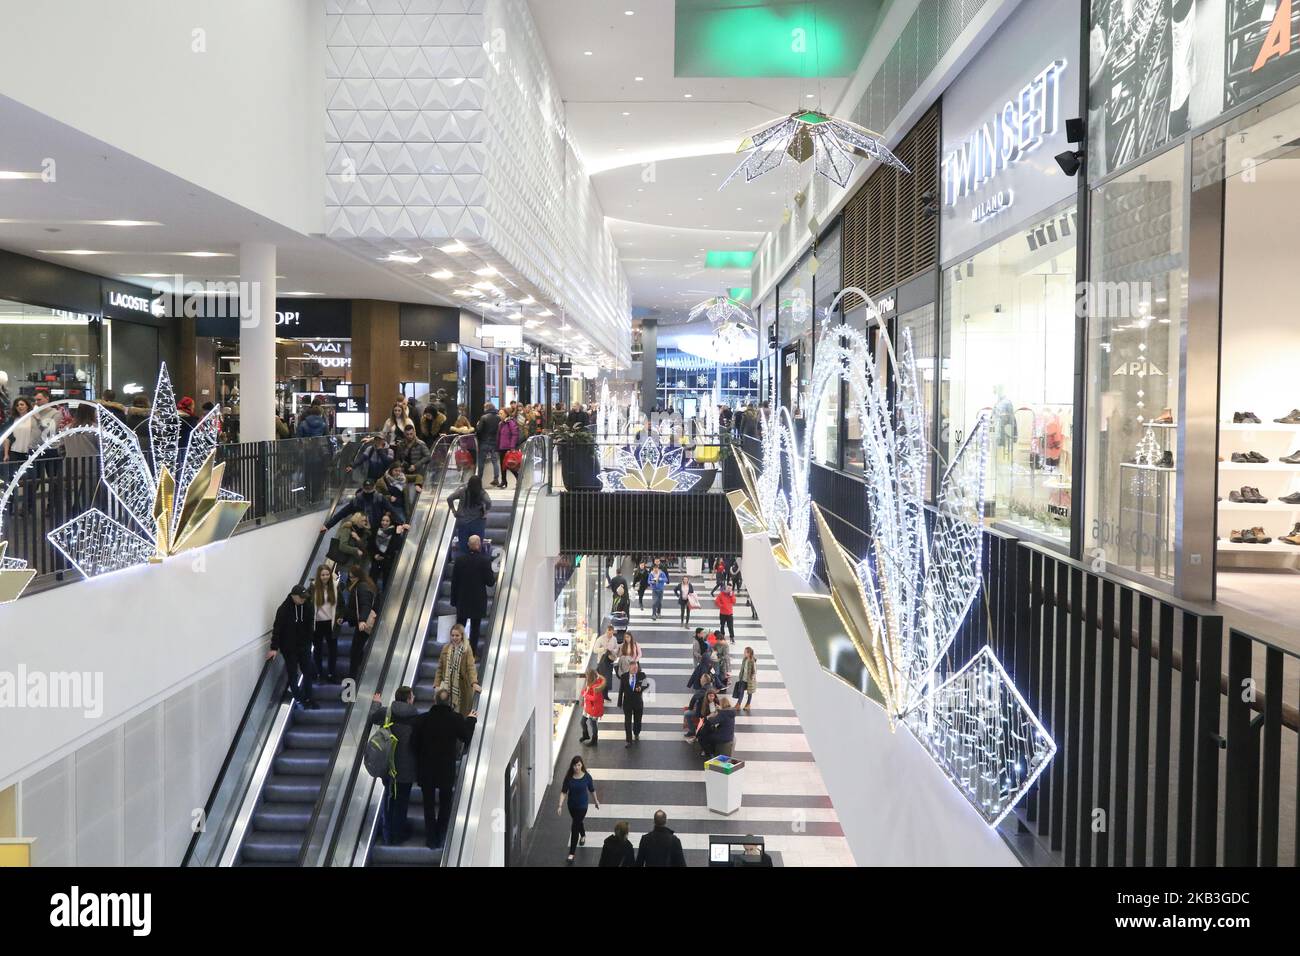 Les gens magasinent dans les magasins Apia et Twinset le centre commercial Forum Gdansk est vu à Gdansk, en Pologne, le 24 novembre 2018 (photo de Michal Fludra/NurPhoto) Banque D'Images